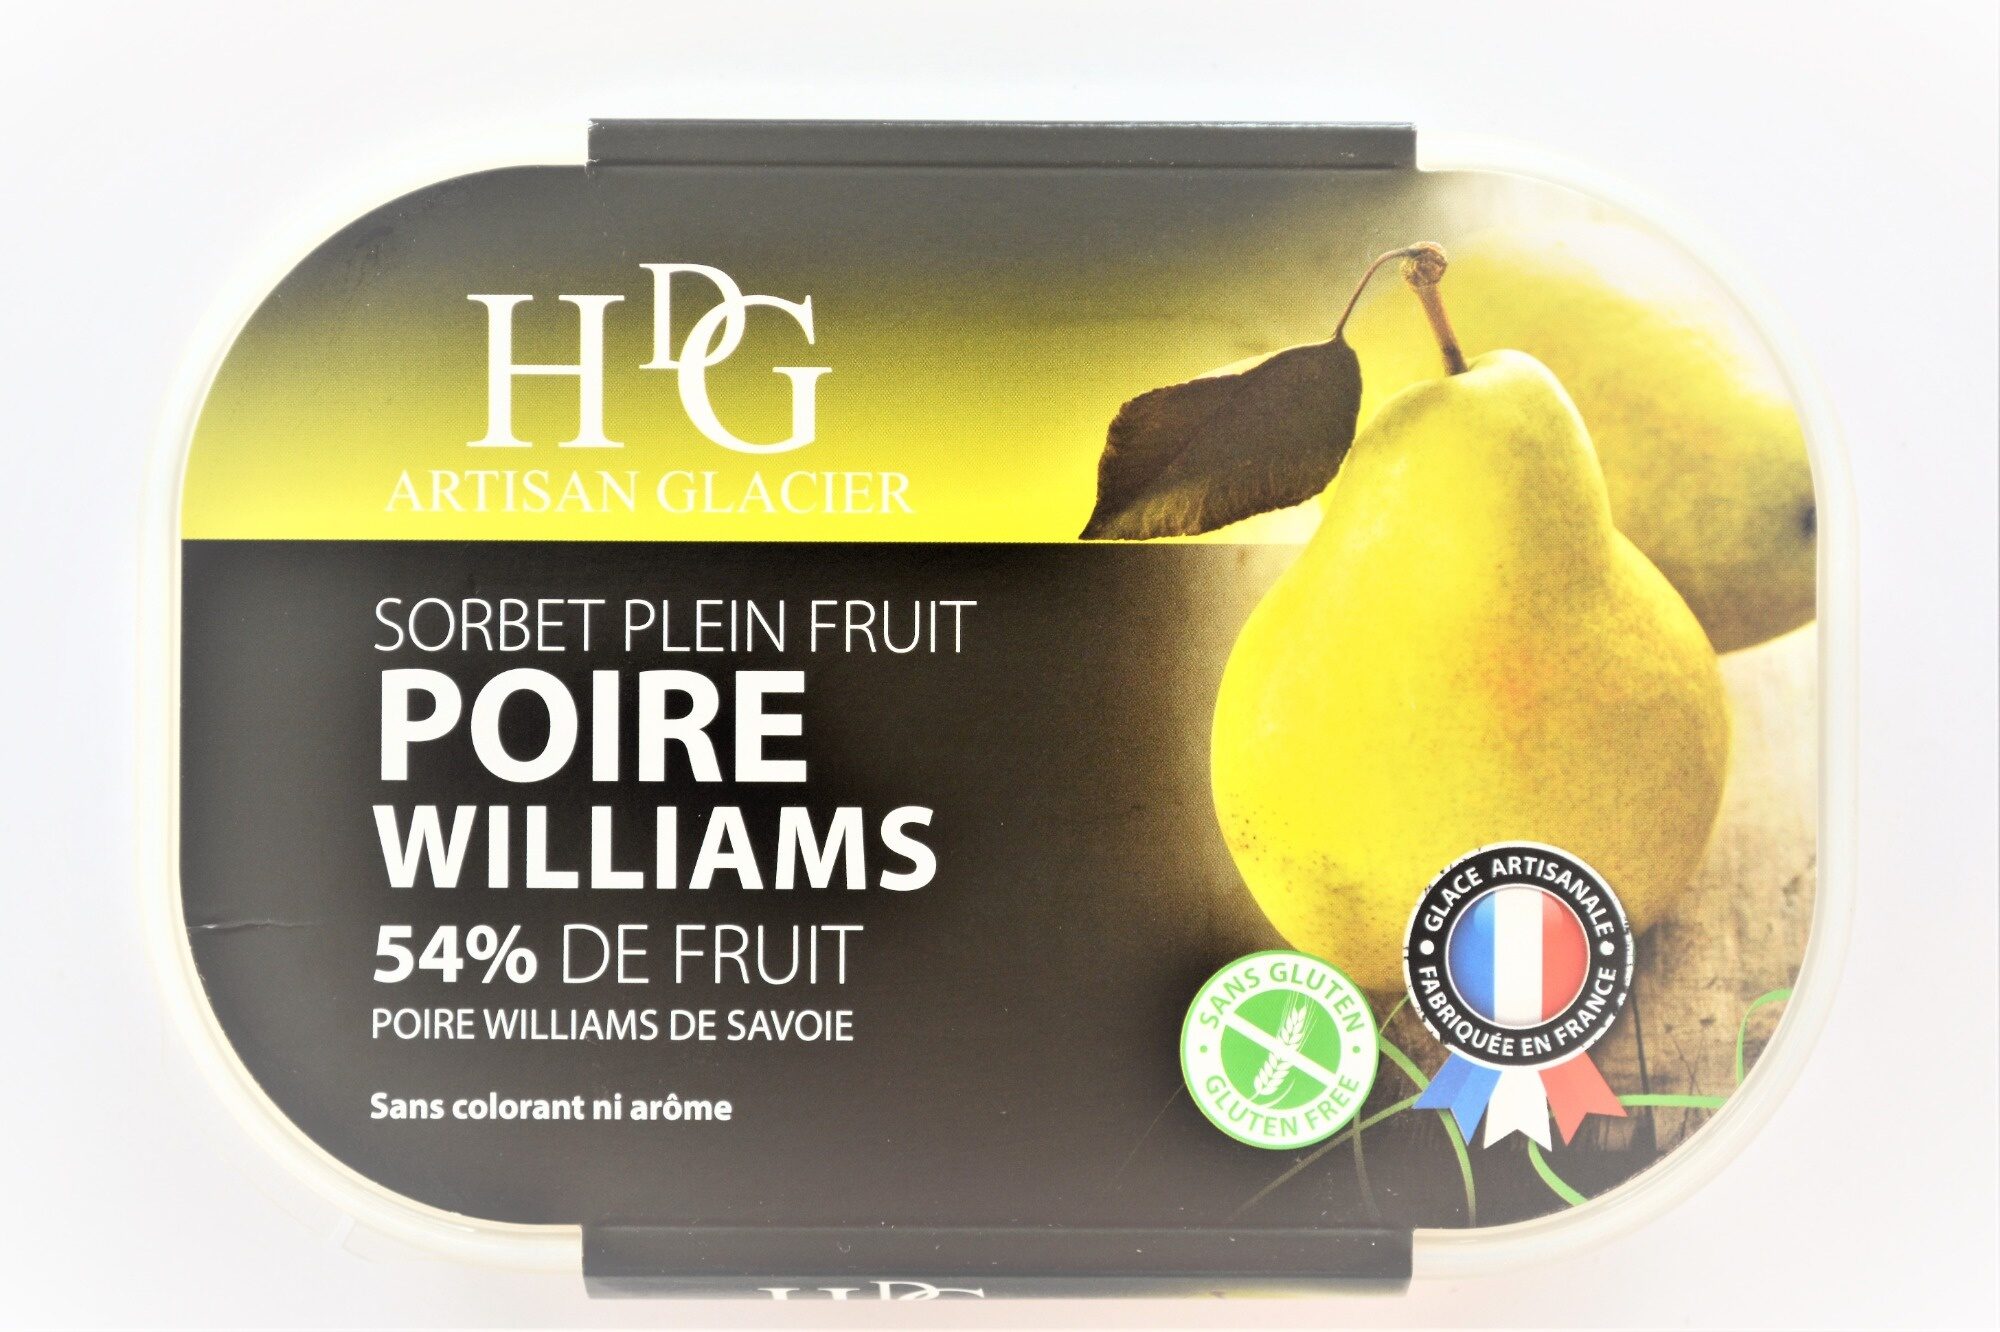 Sorbet plein fruit POIRE WILLIAMS, 54% de fruit - Producto - fr